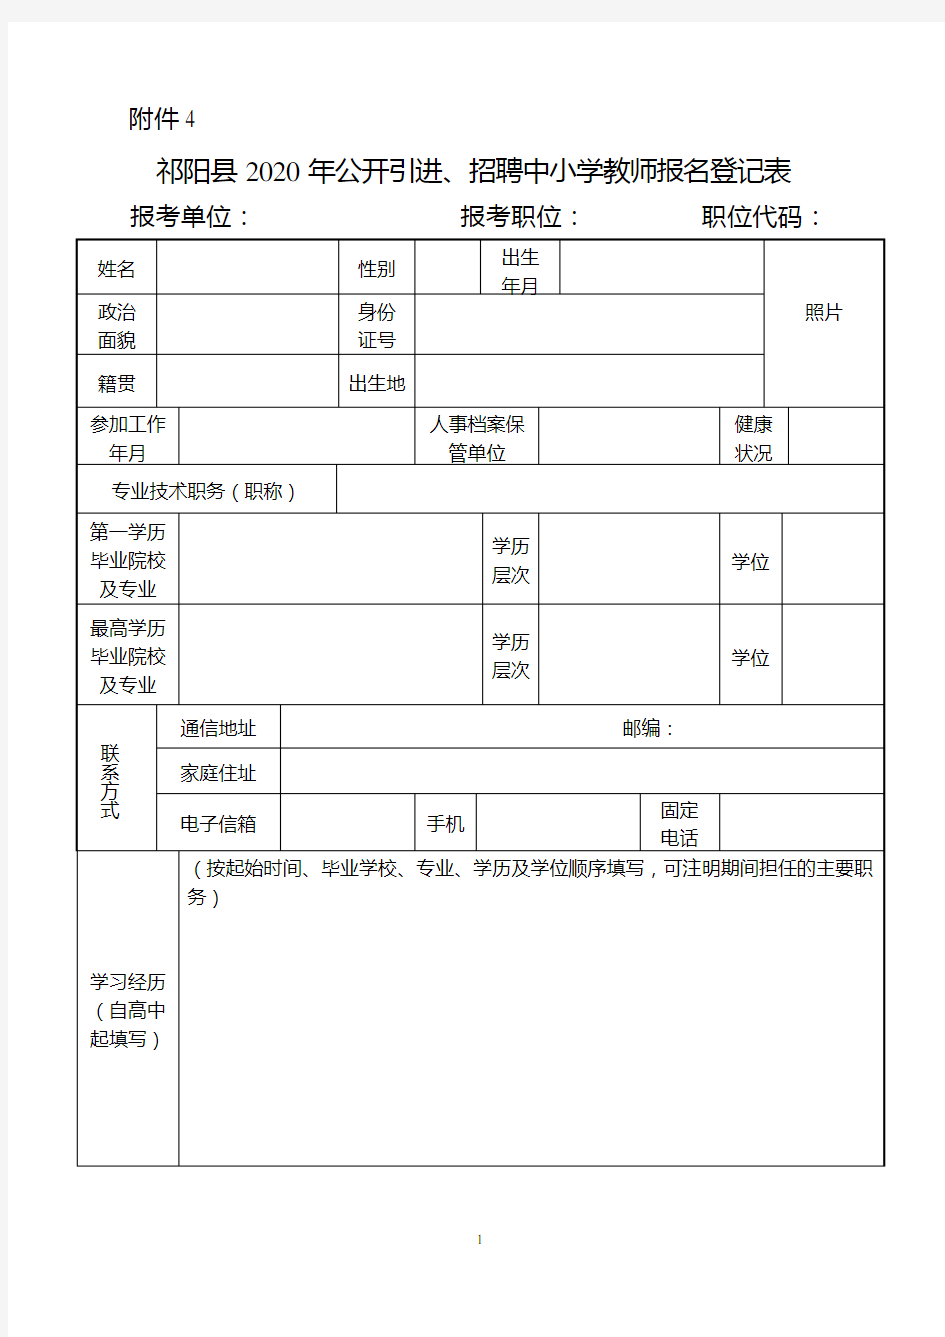 祁阳县2020年公开引进招聘中小学教师报名登记表